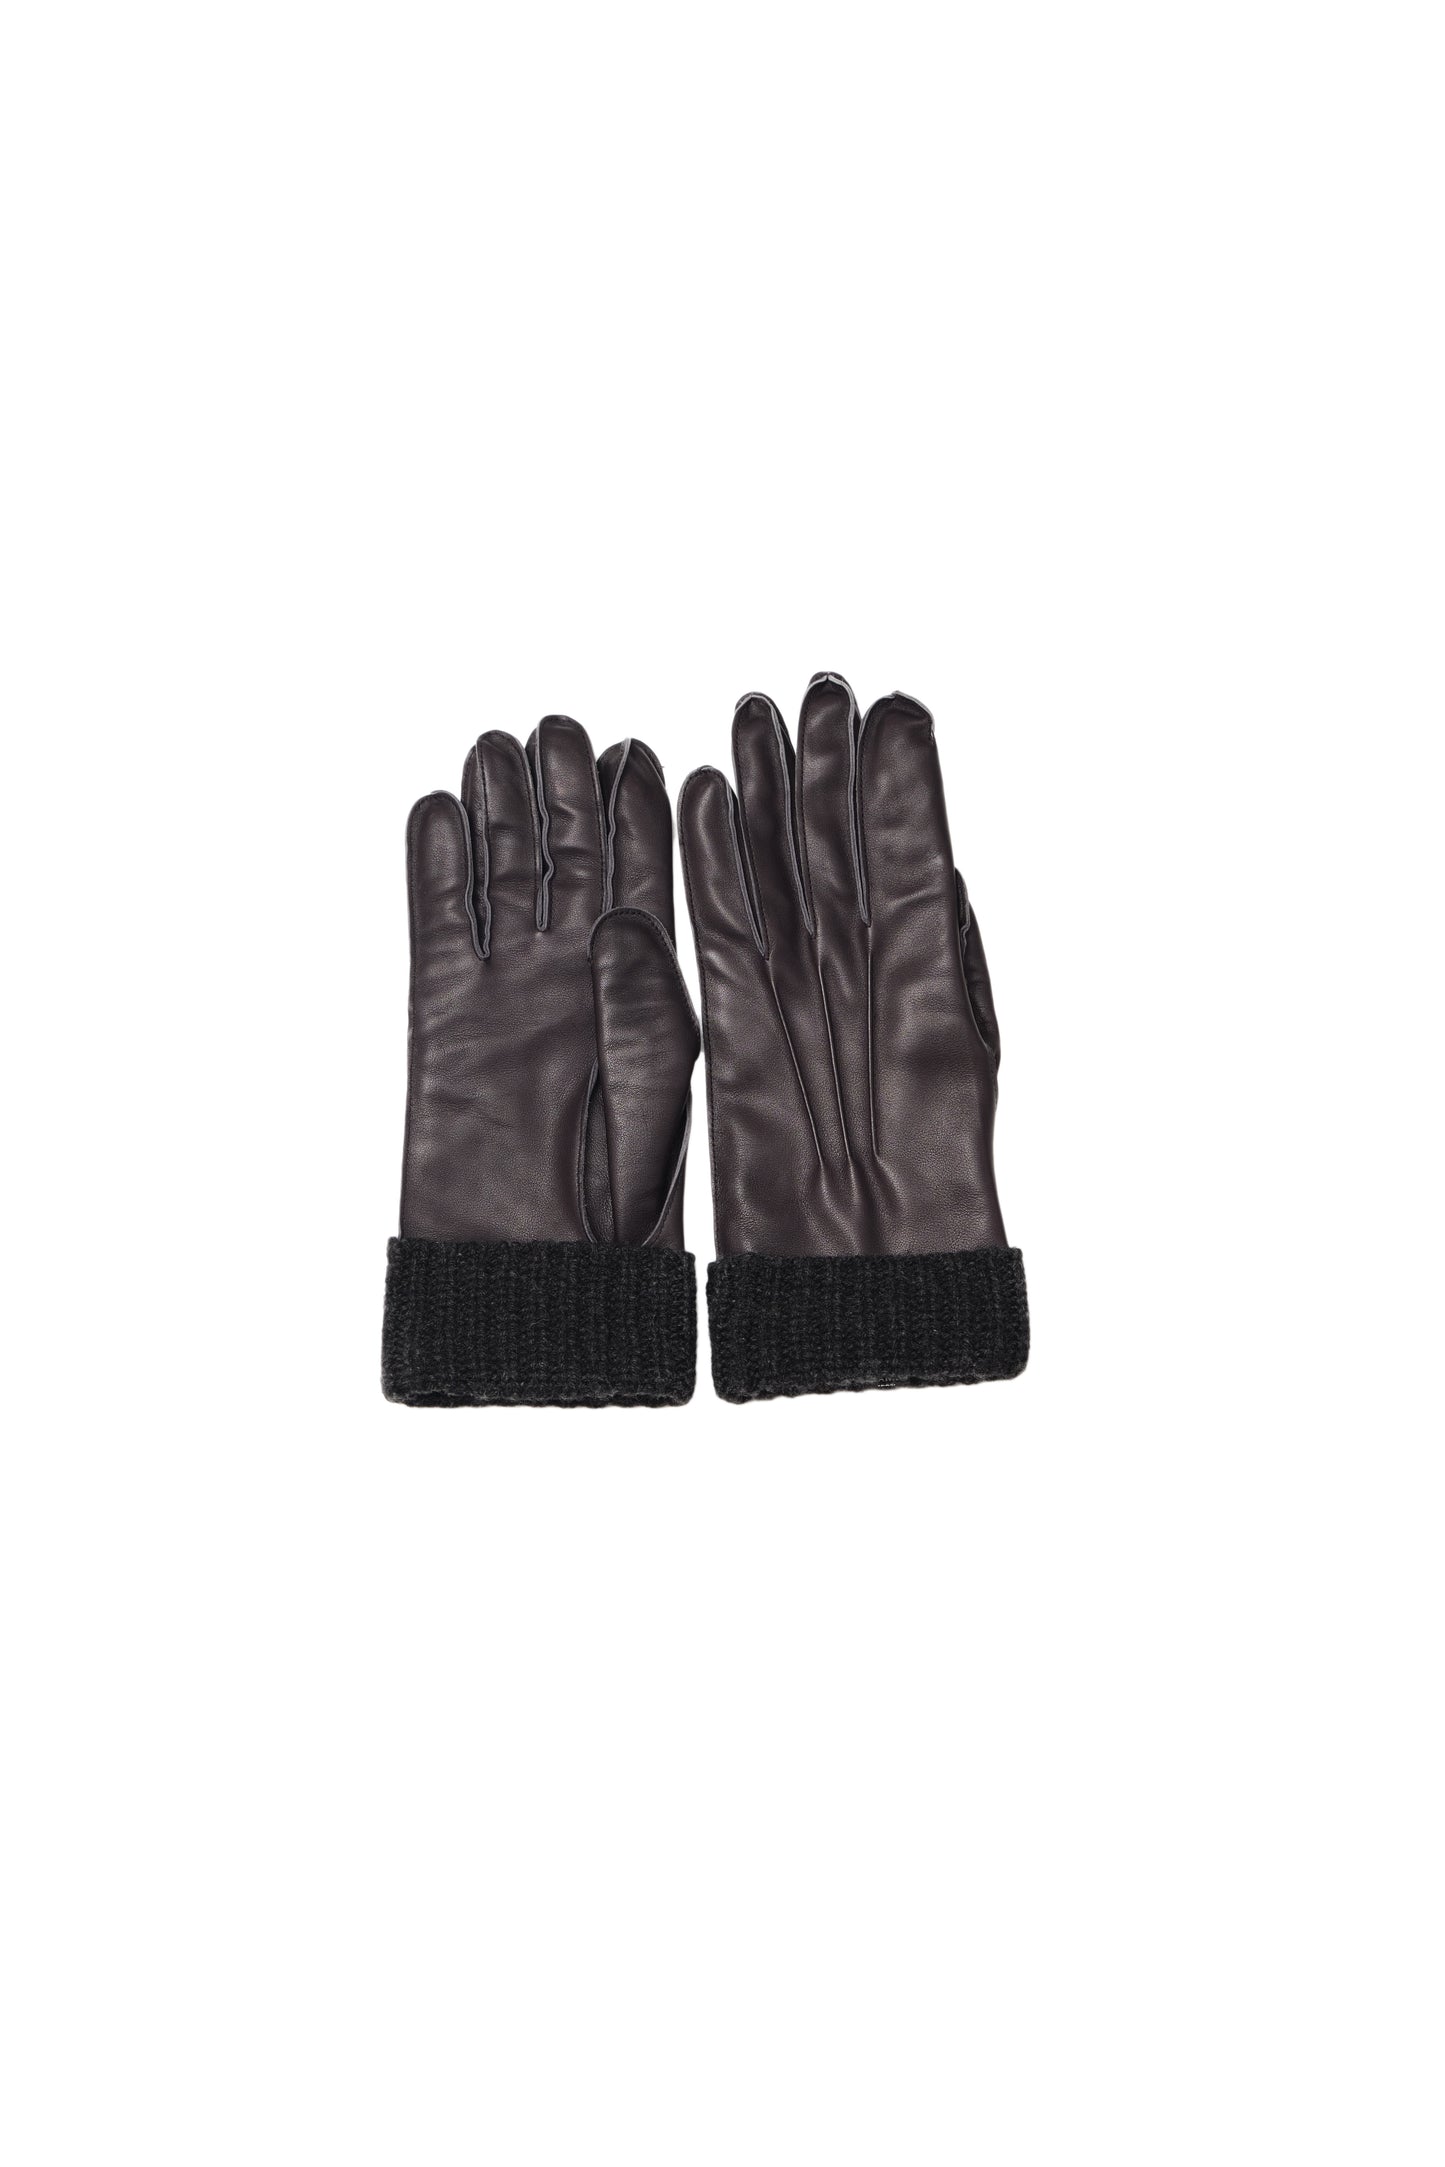 John Calf Leather Gloves